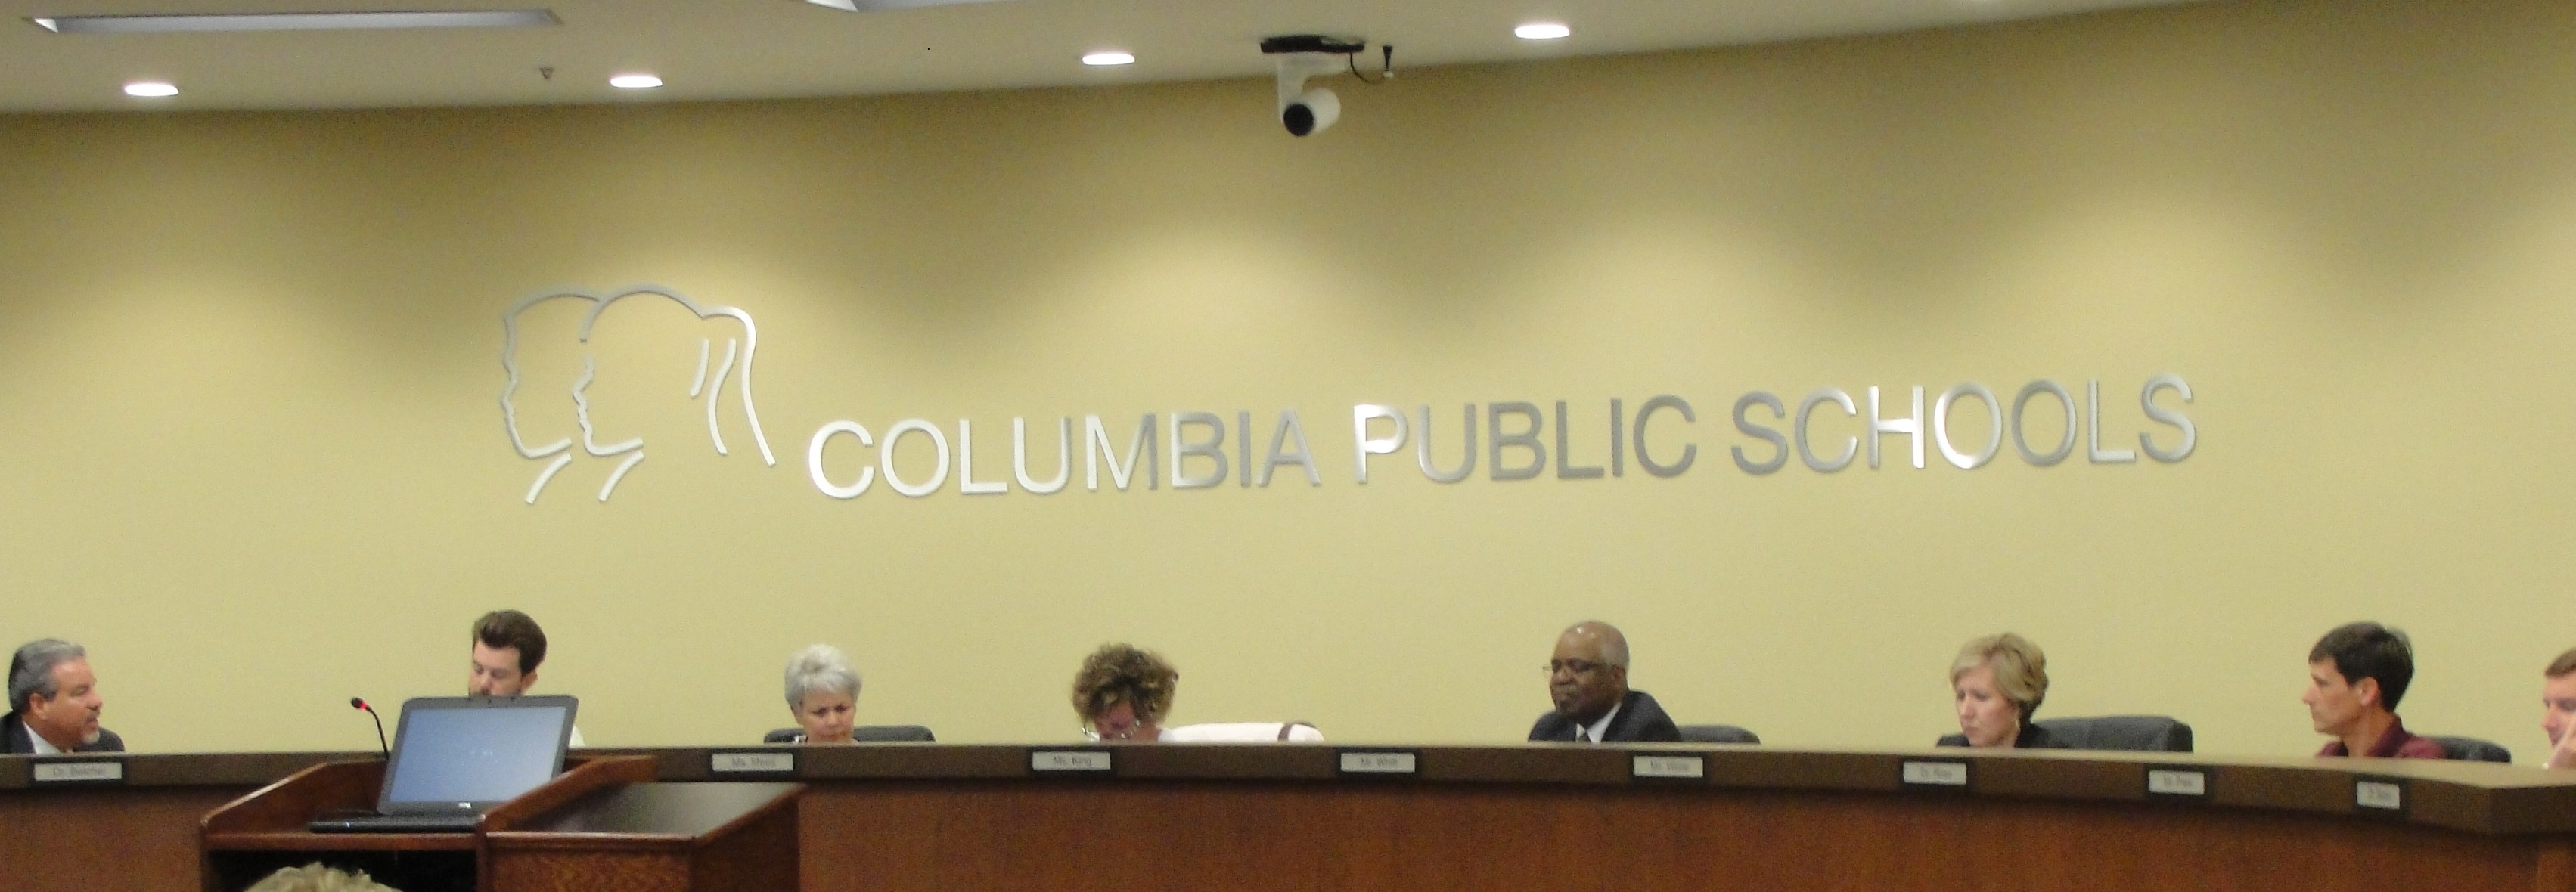 Columbia Public Schools to seek 50 million bond issue KBIA